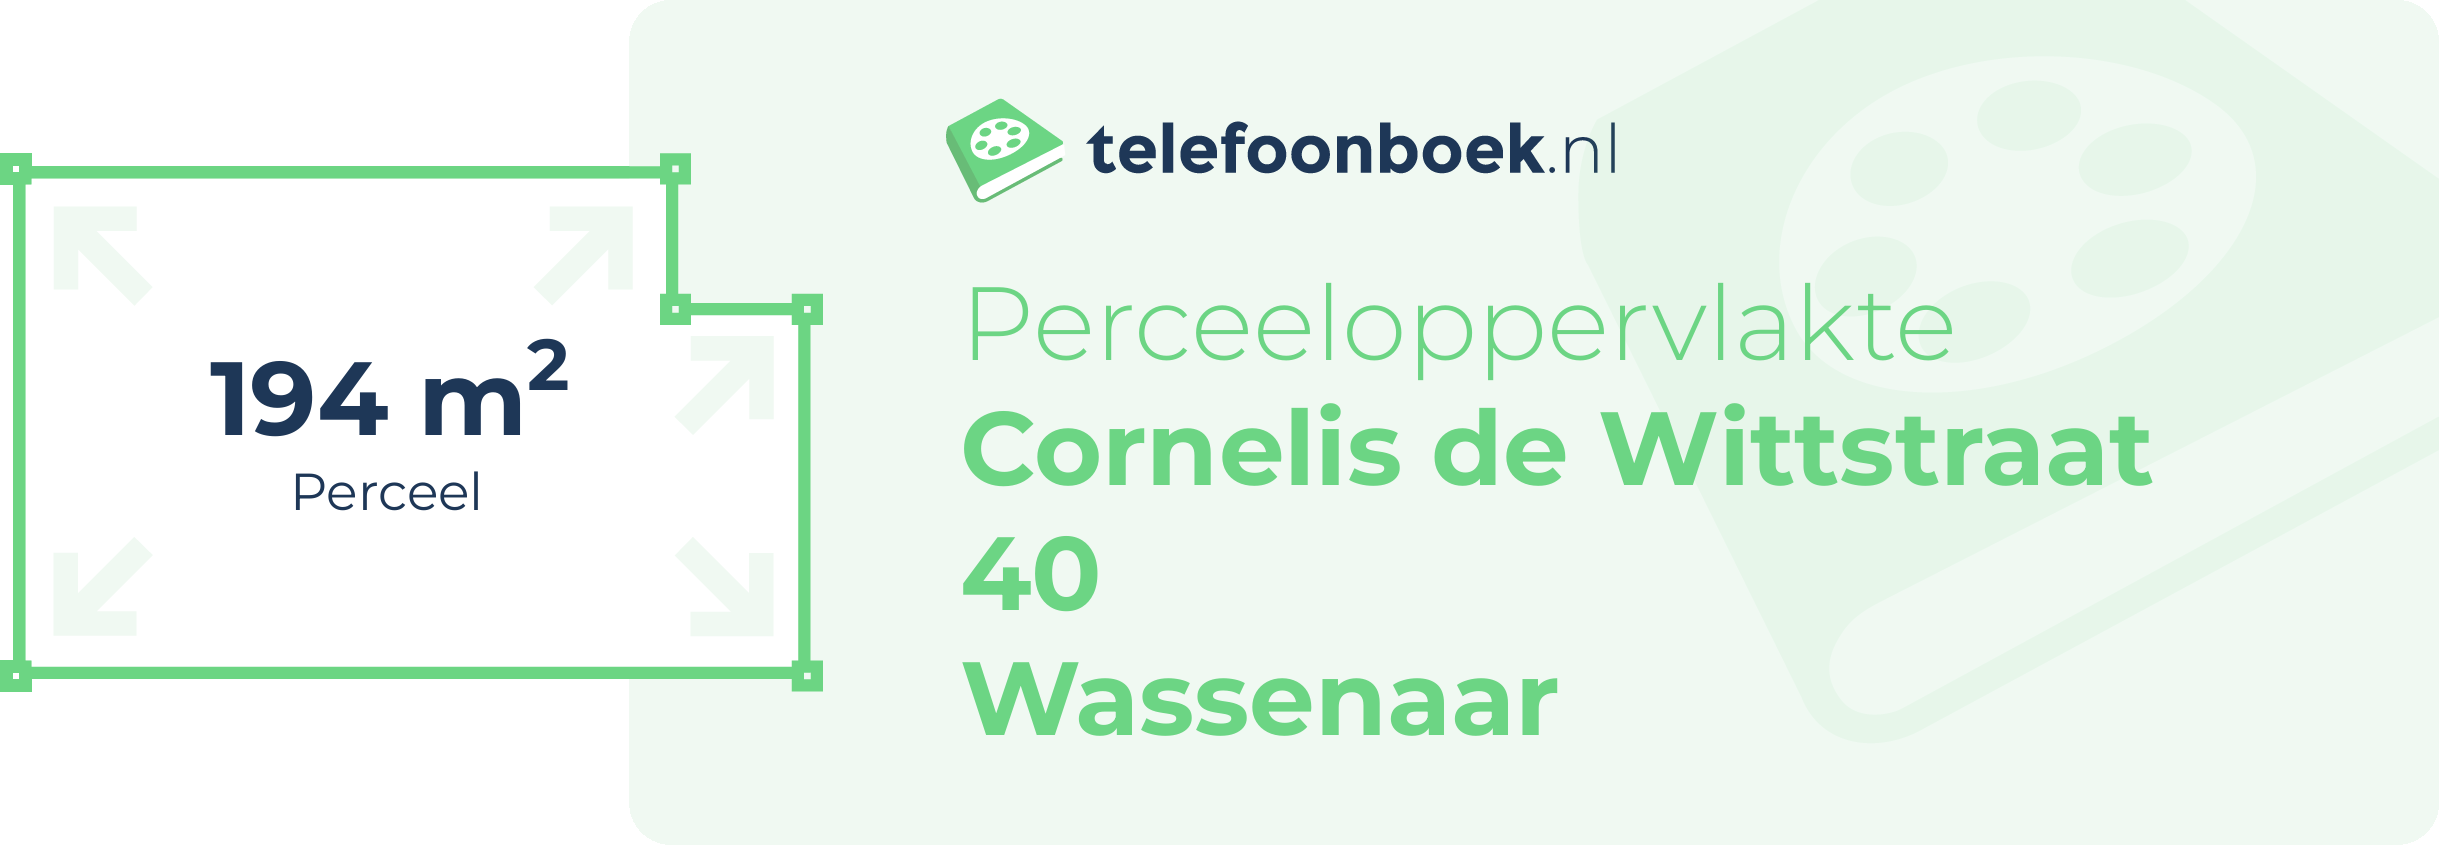 Perceeloppervlakte Cornelis De Wittstraat 40 Wassenaar